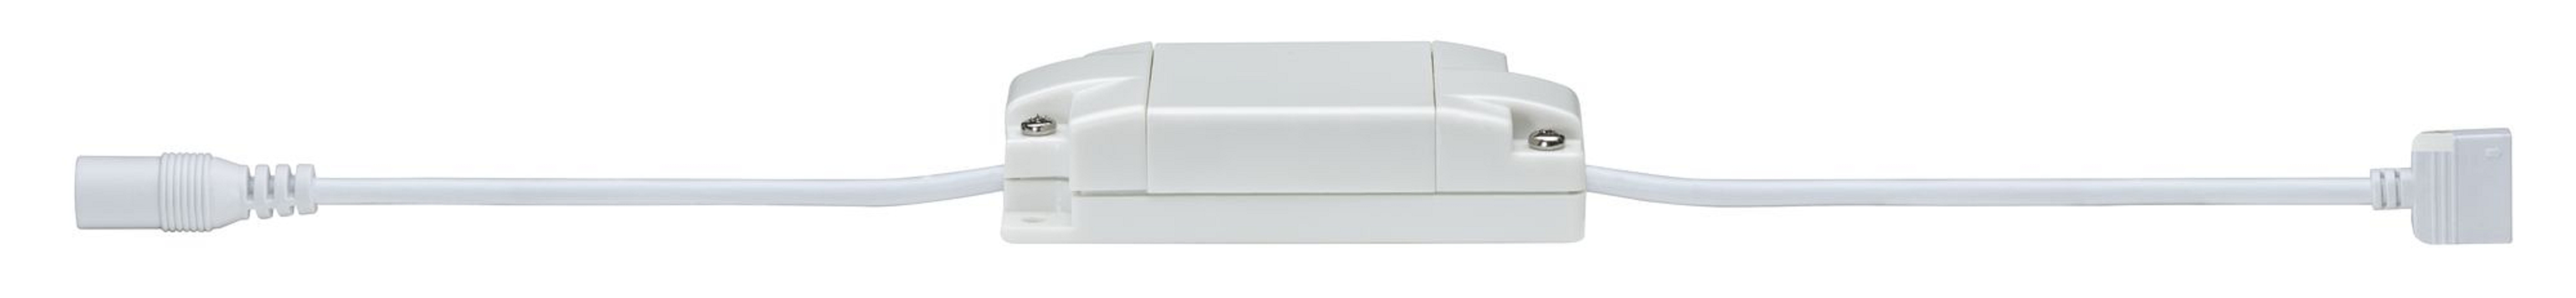 PAULMANN LICHT MaxLED White 500 RGBW|Tunable (50004) Farbwechsel LED Strips